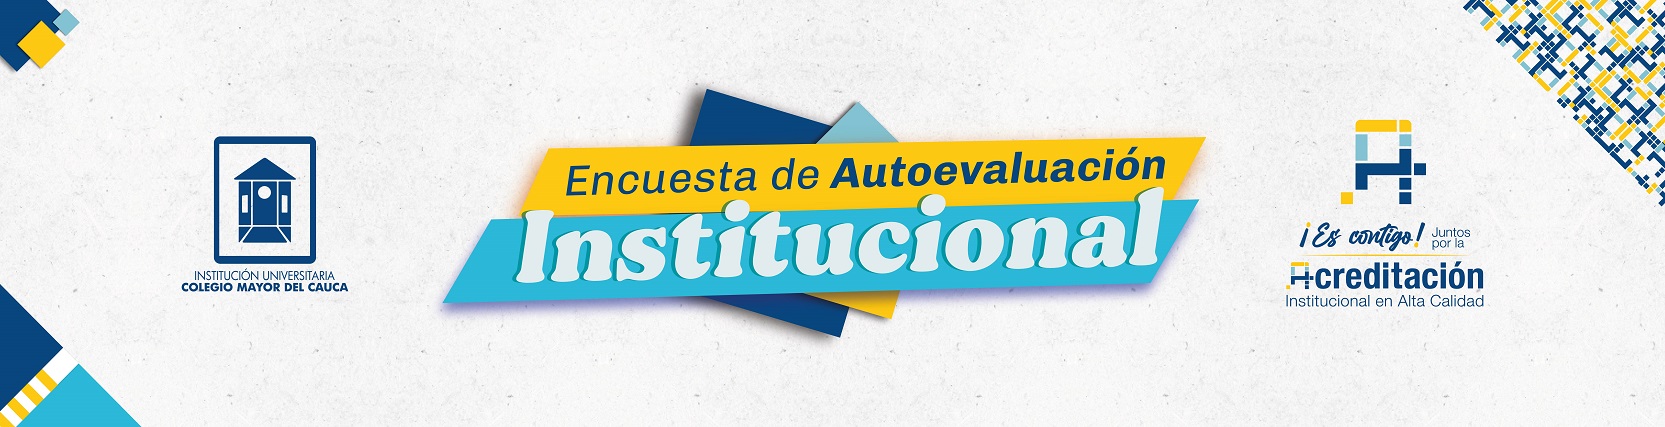 Banner formulario Encuesta de Autoevalación Institucional 